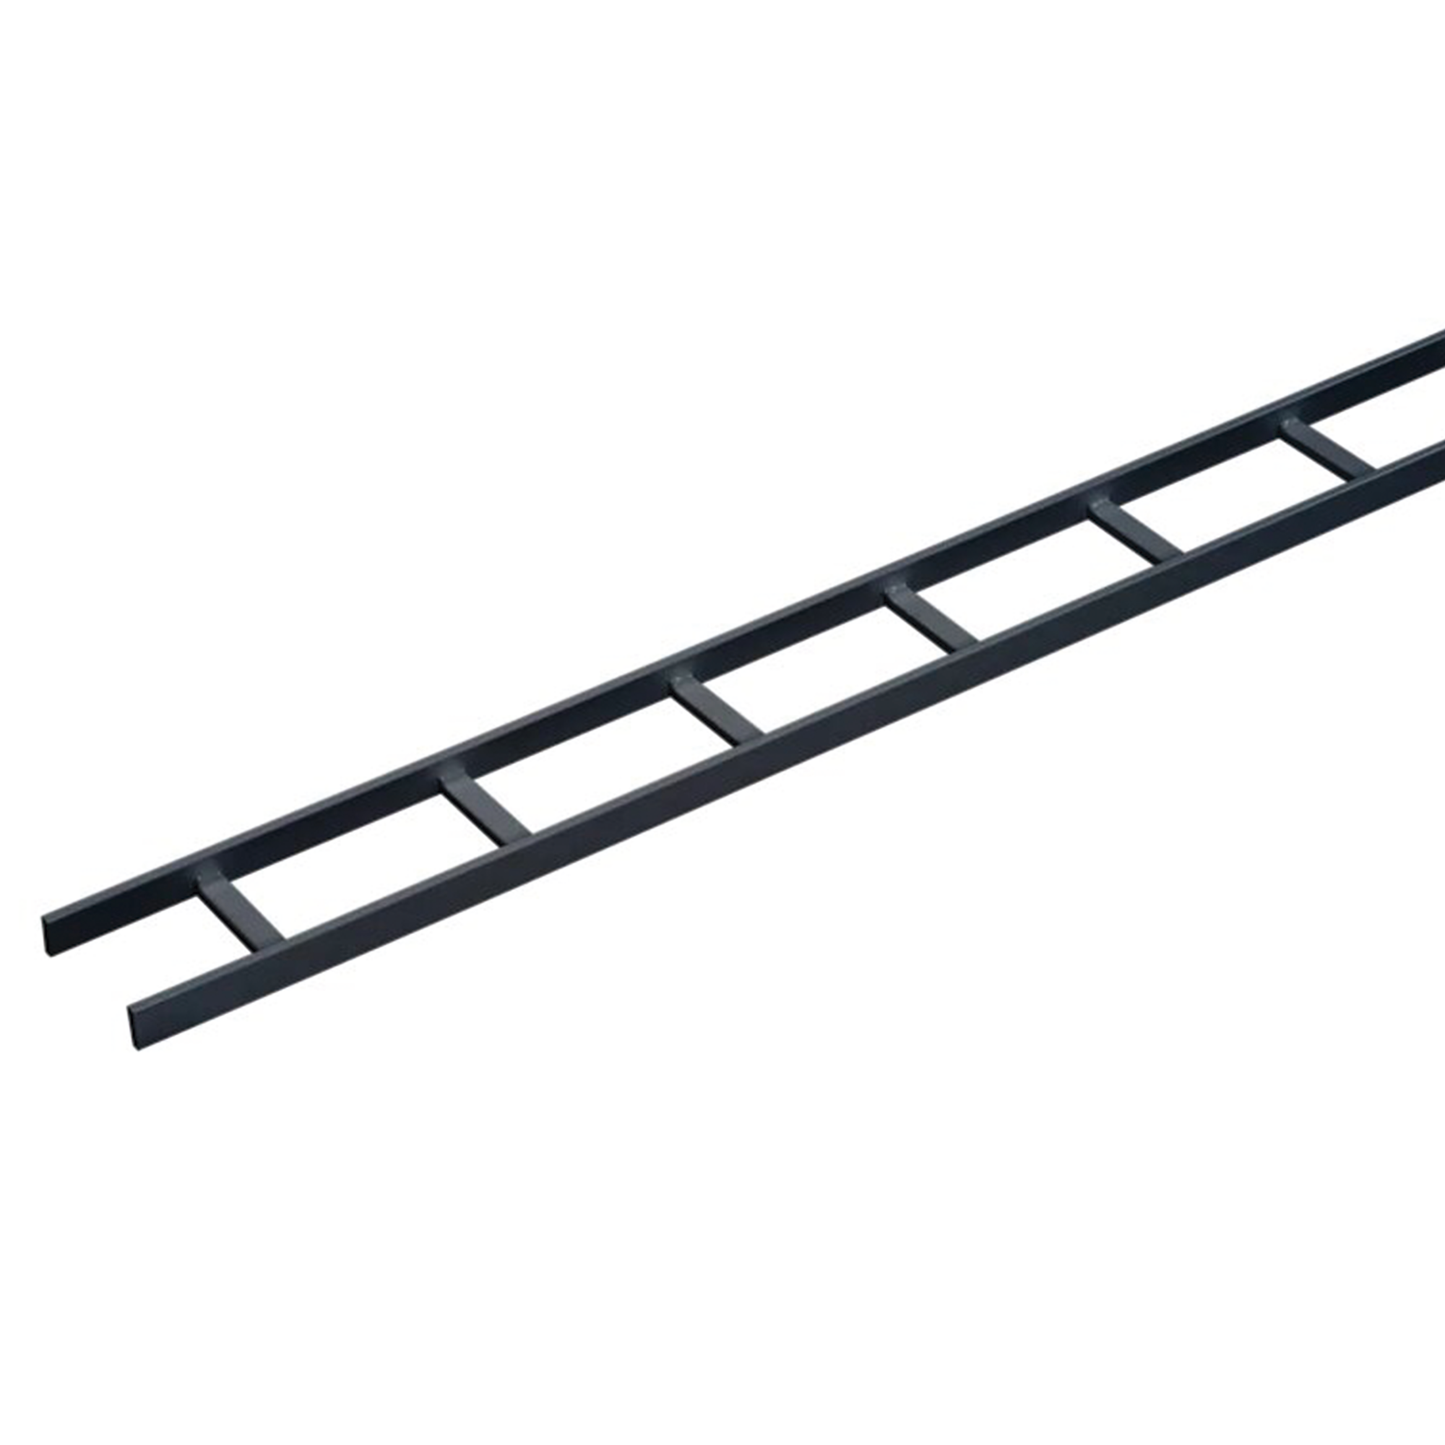 Charola Tipo Escalerilla de Secciones Rectas, 12 in (305 mm) de Ancho, Travesaños a Intervalos de 9 in (229 mm), Tramo de 10 ft (3.05 m), de Acero, Color Negro